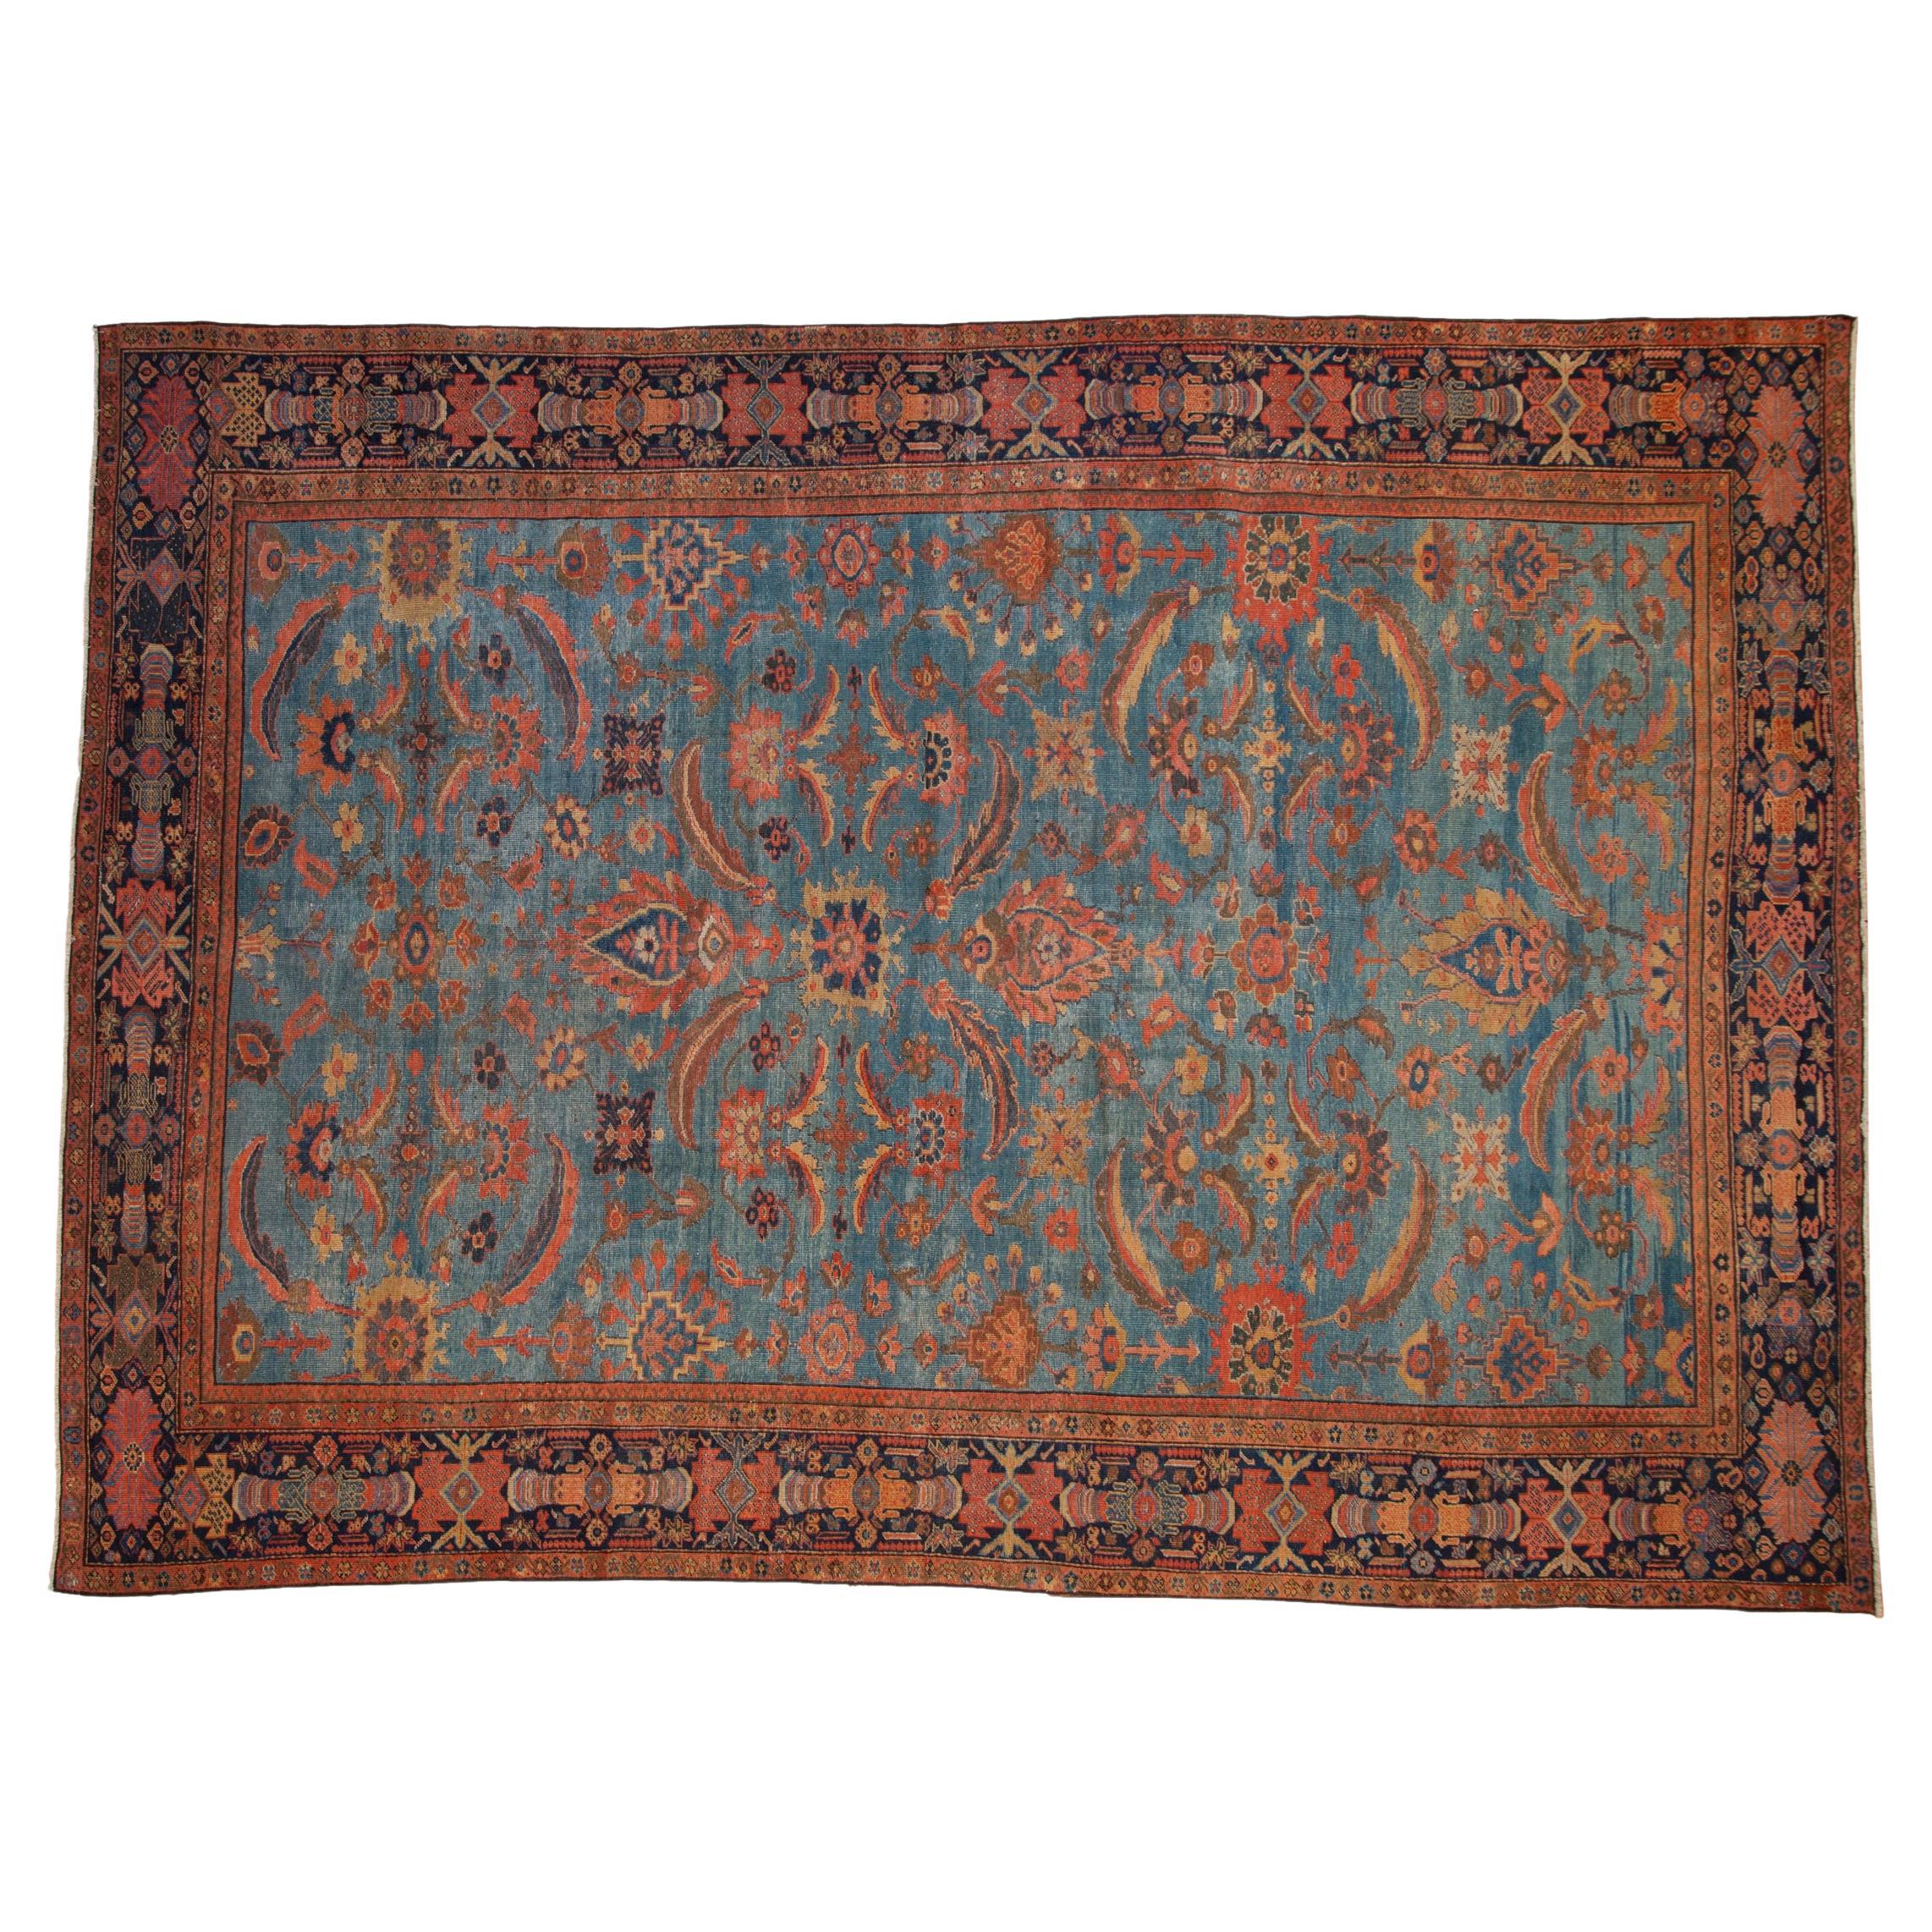 Antique Mahal Carpet